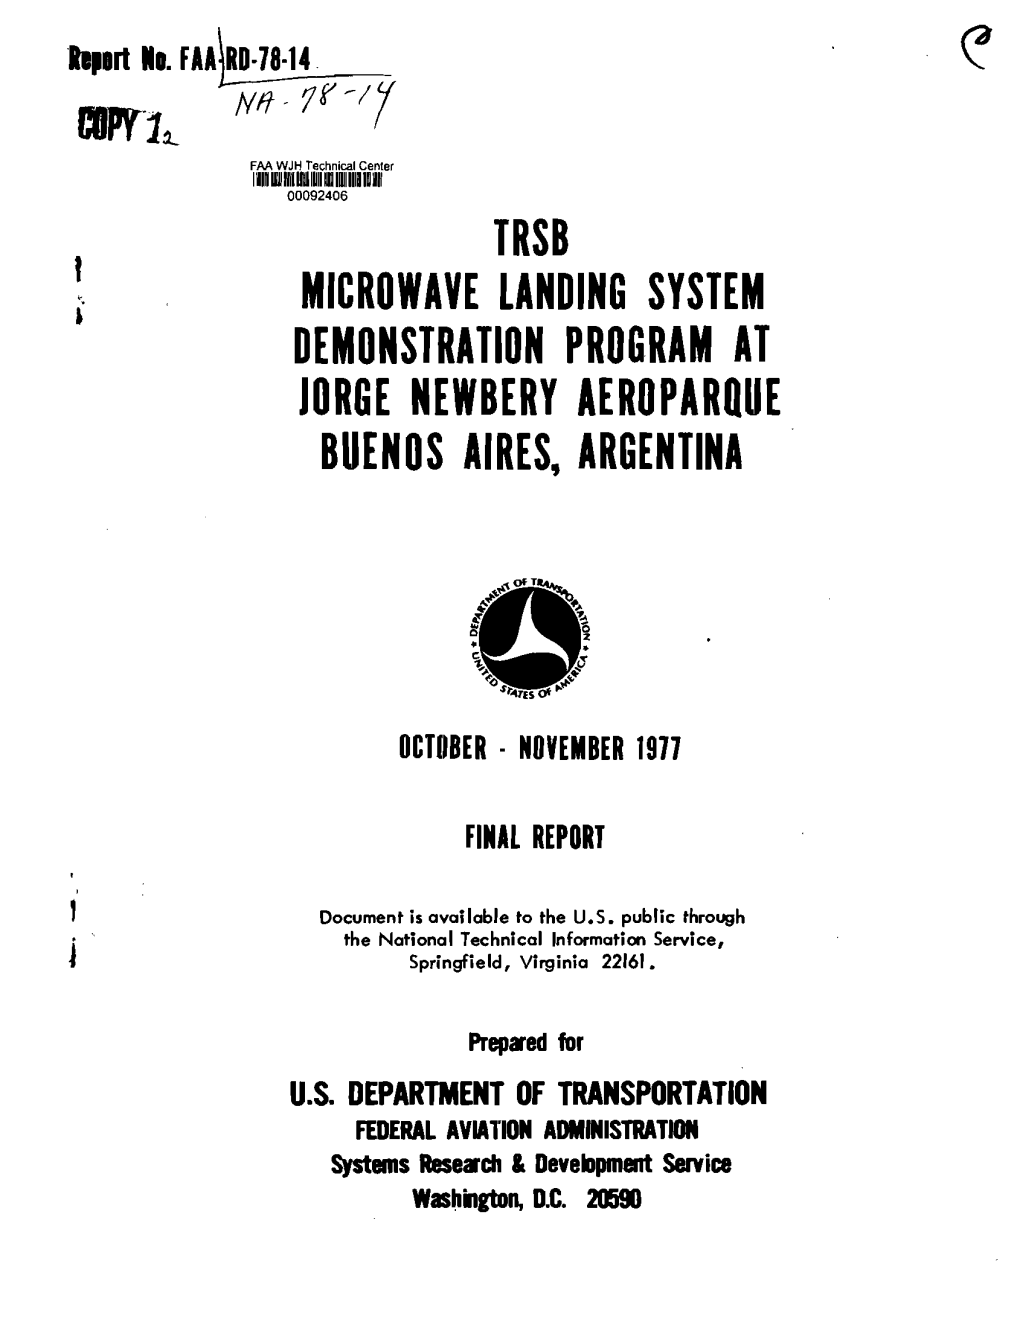 TRSB Microwave Landing System Demonstration October - November 1977 Program at Buenos Aires, Argentina 6